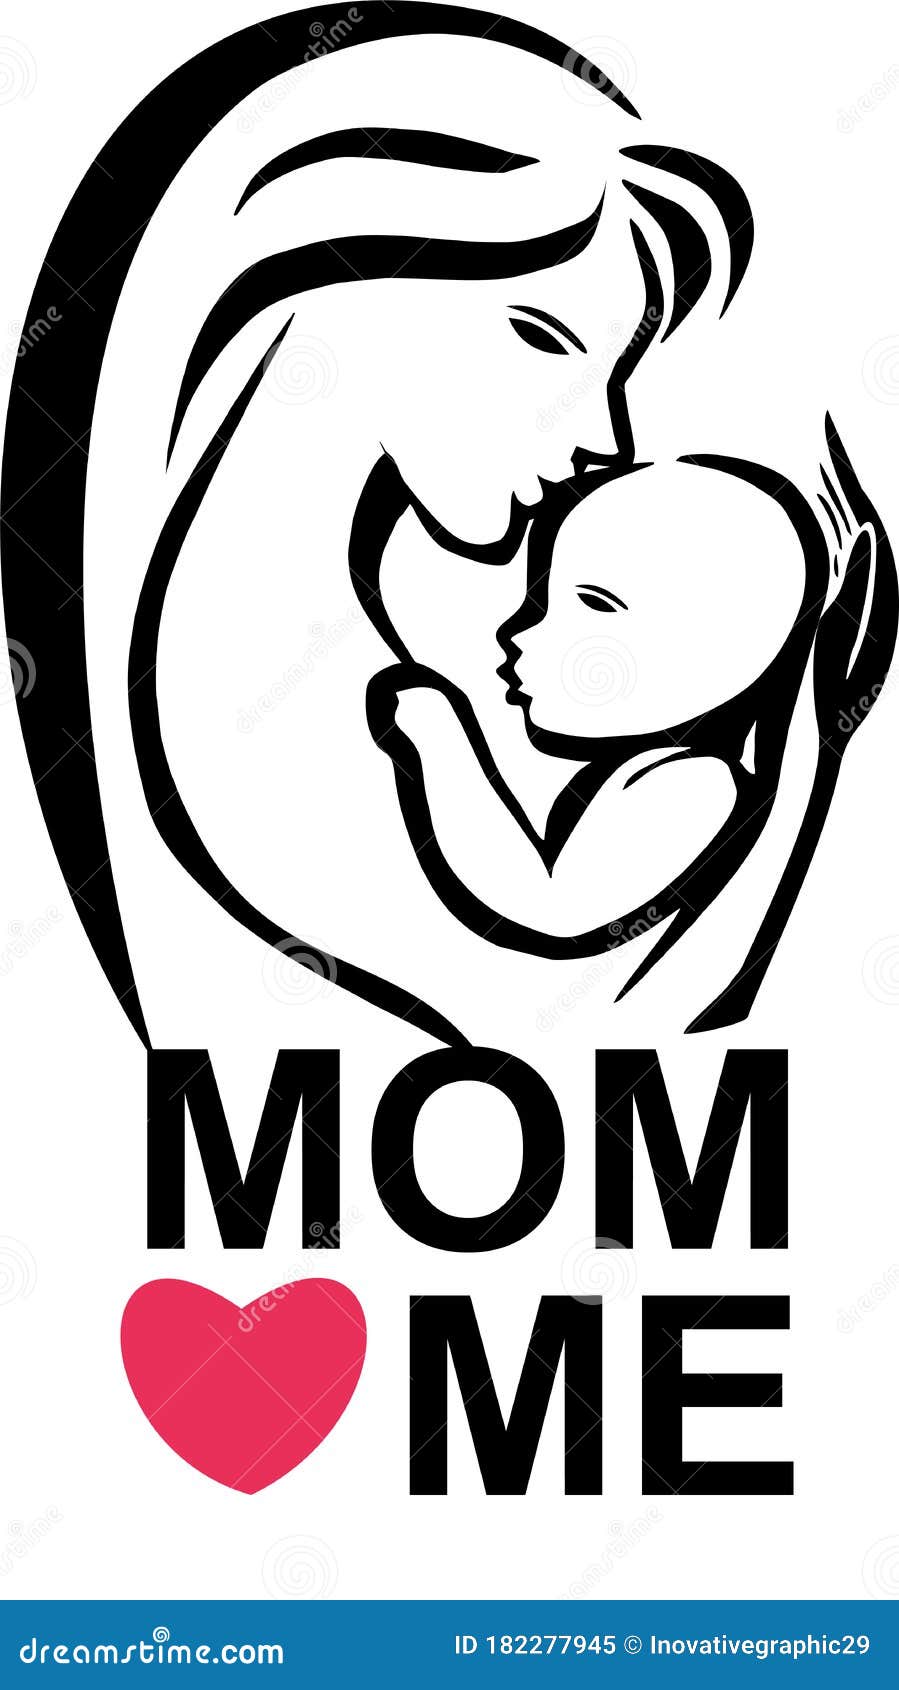 Mom Love Me logo line art stock vector. Illustration of beauty ...